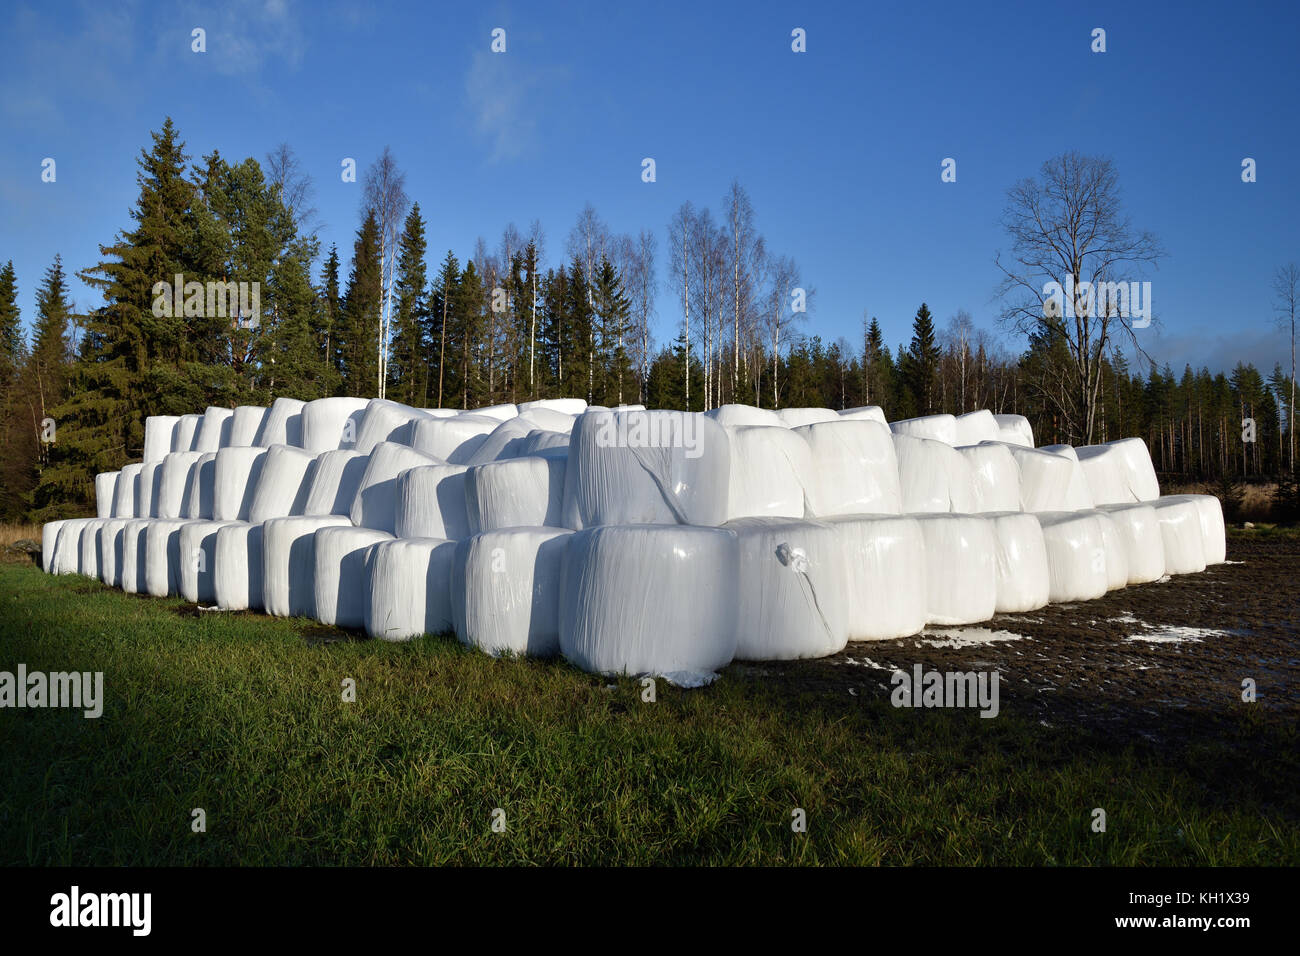 Menge einsilierung conservated in Kunststoff auf einem Feld mit blauem Himmel und Wald im Hintergrund, Bild aus dem Norden von Schweden. Stockfoto